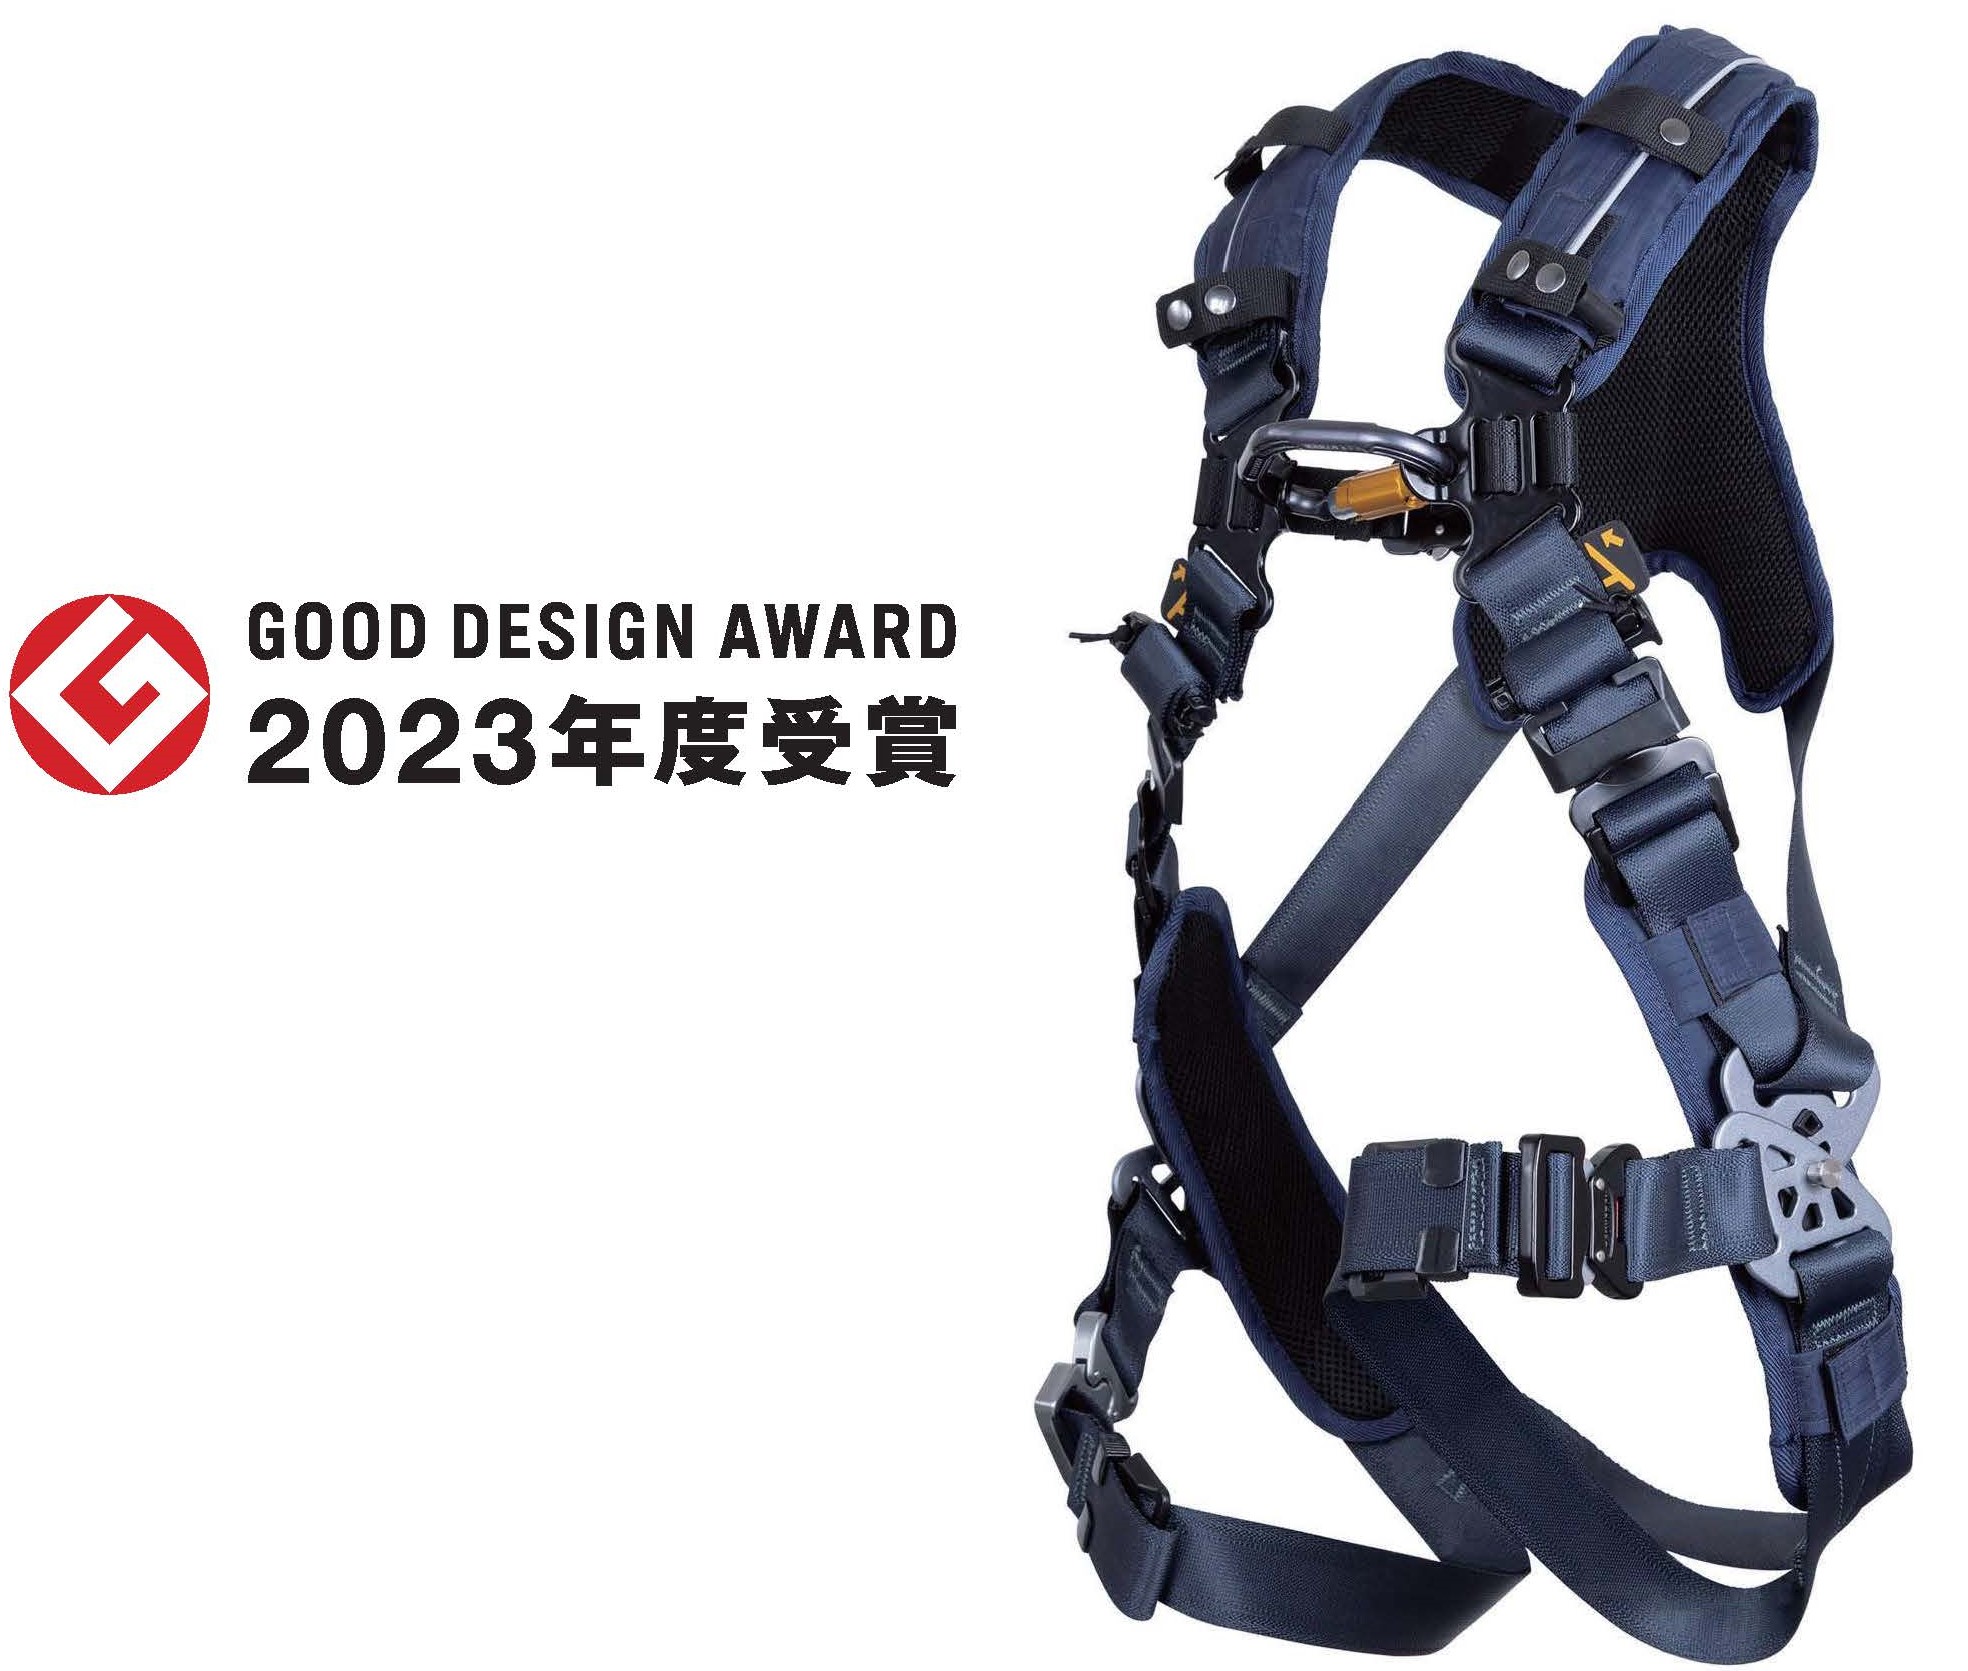 【藤井電工】「ゼロGハーネス」が【2023年度 グッドデザイン賞を受賞】の画像